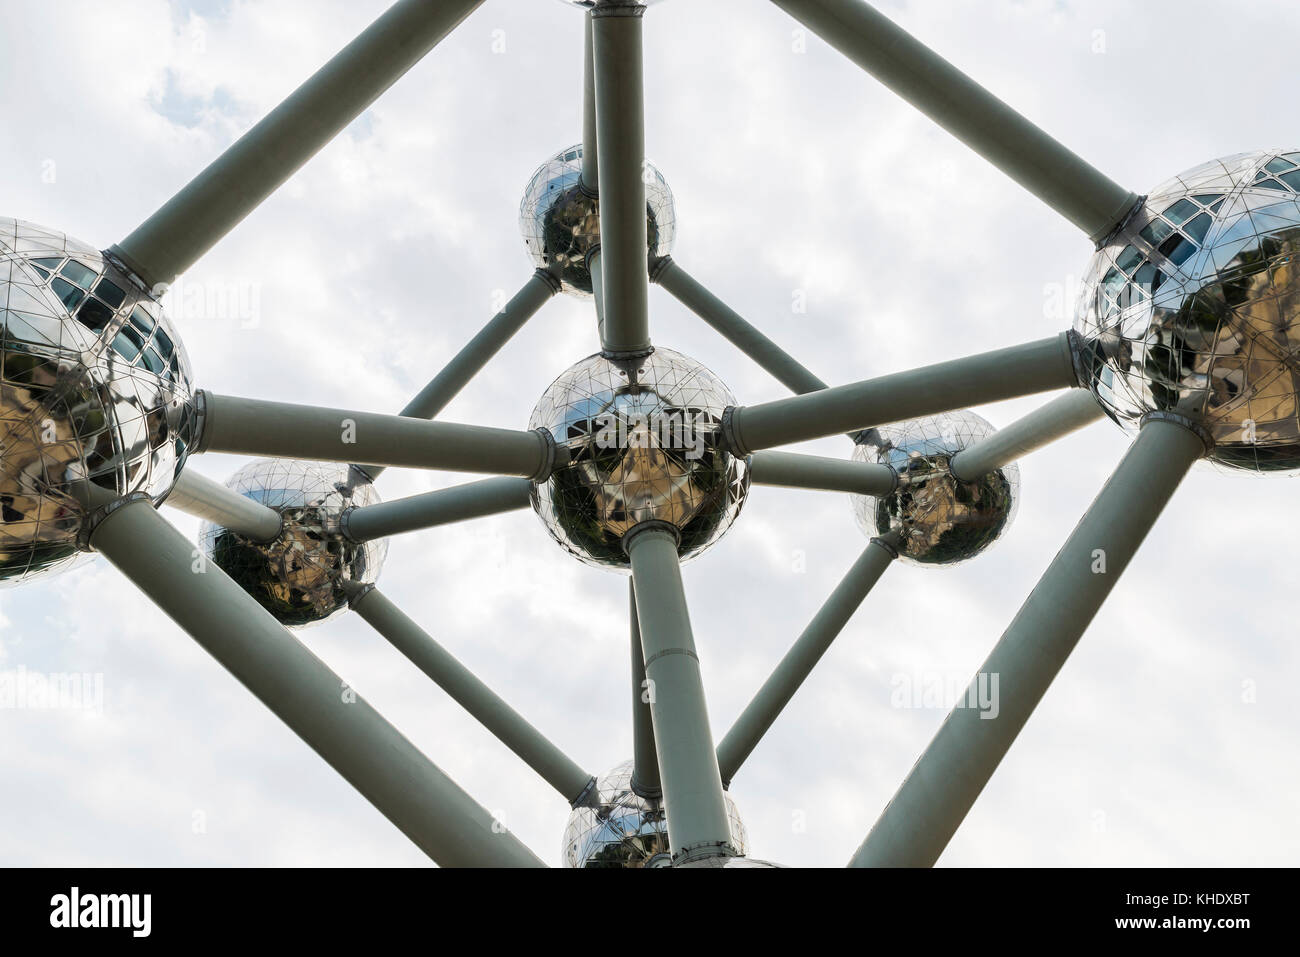 Brüssel, Belgien - 27 August 2017: Atomium, berühmten Struktur in Form eines Atoms, in das Messegelände in Brüssel, Belgien Stockfoto